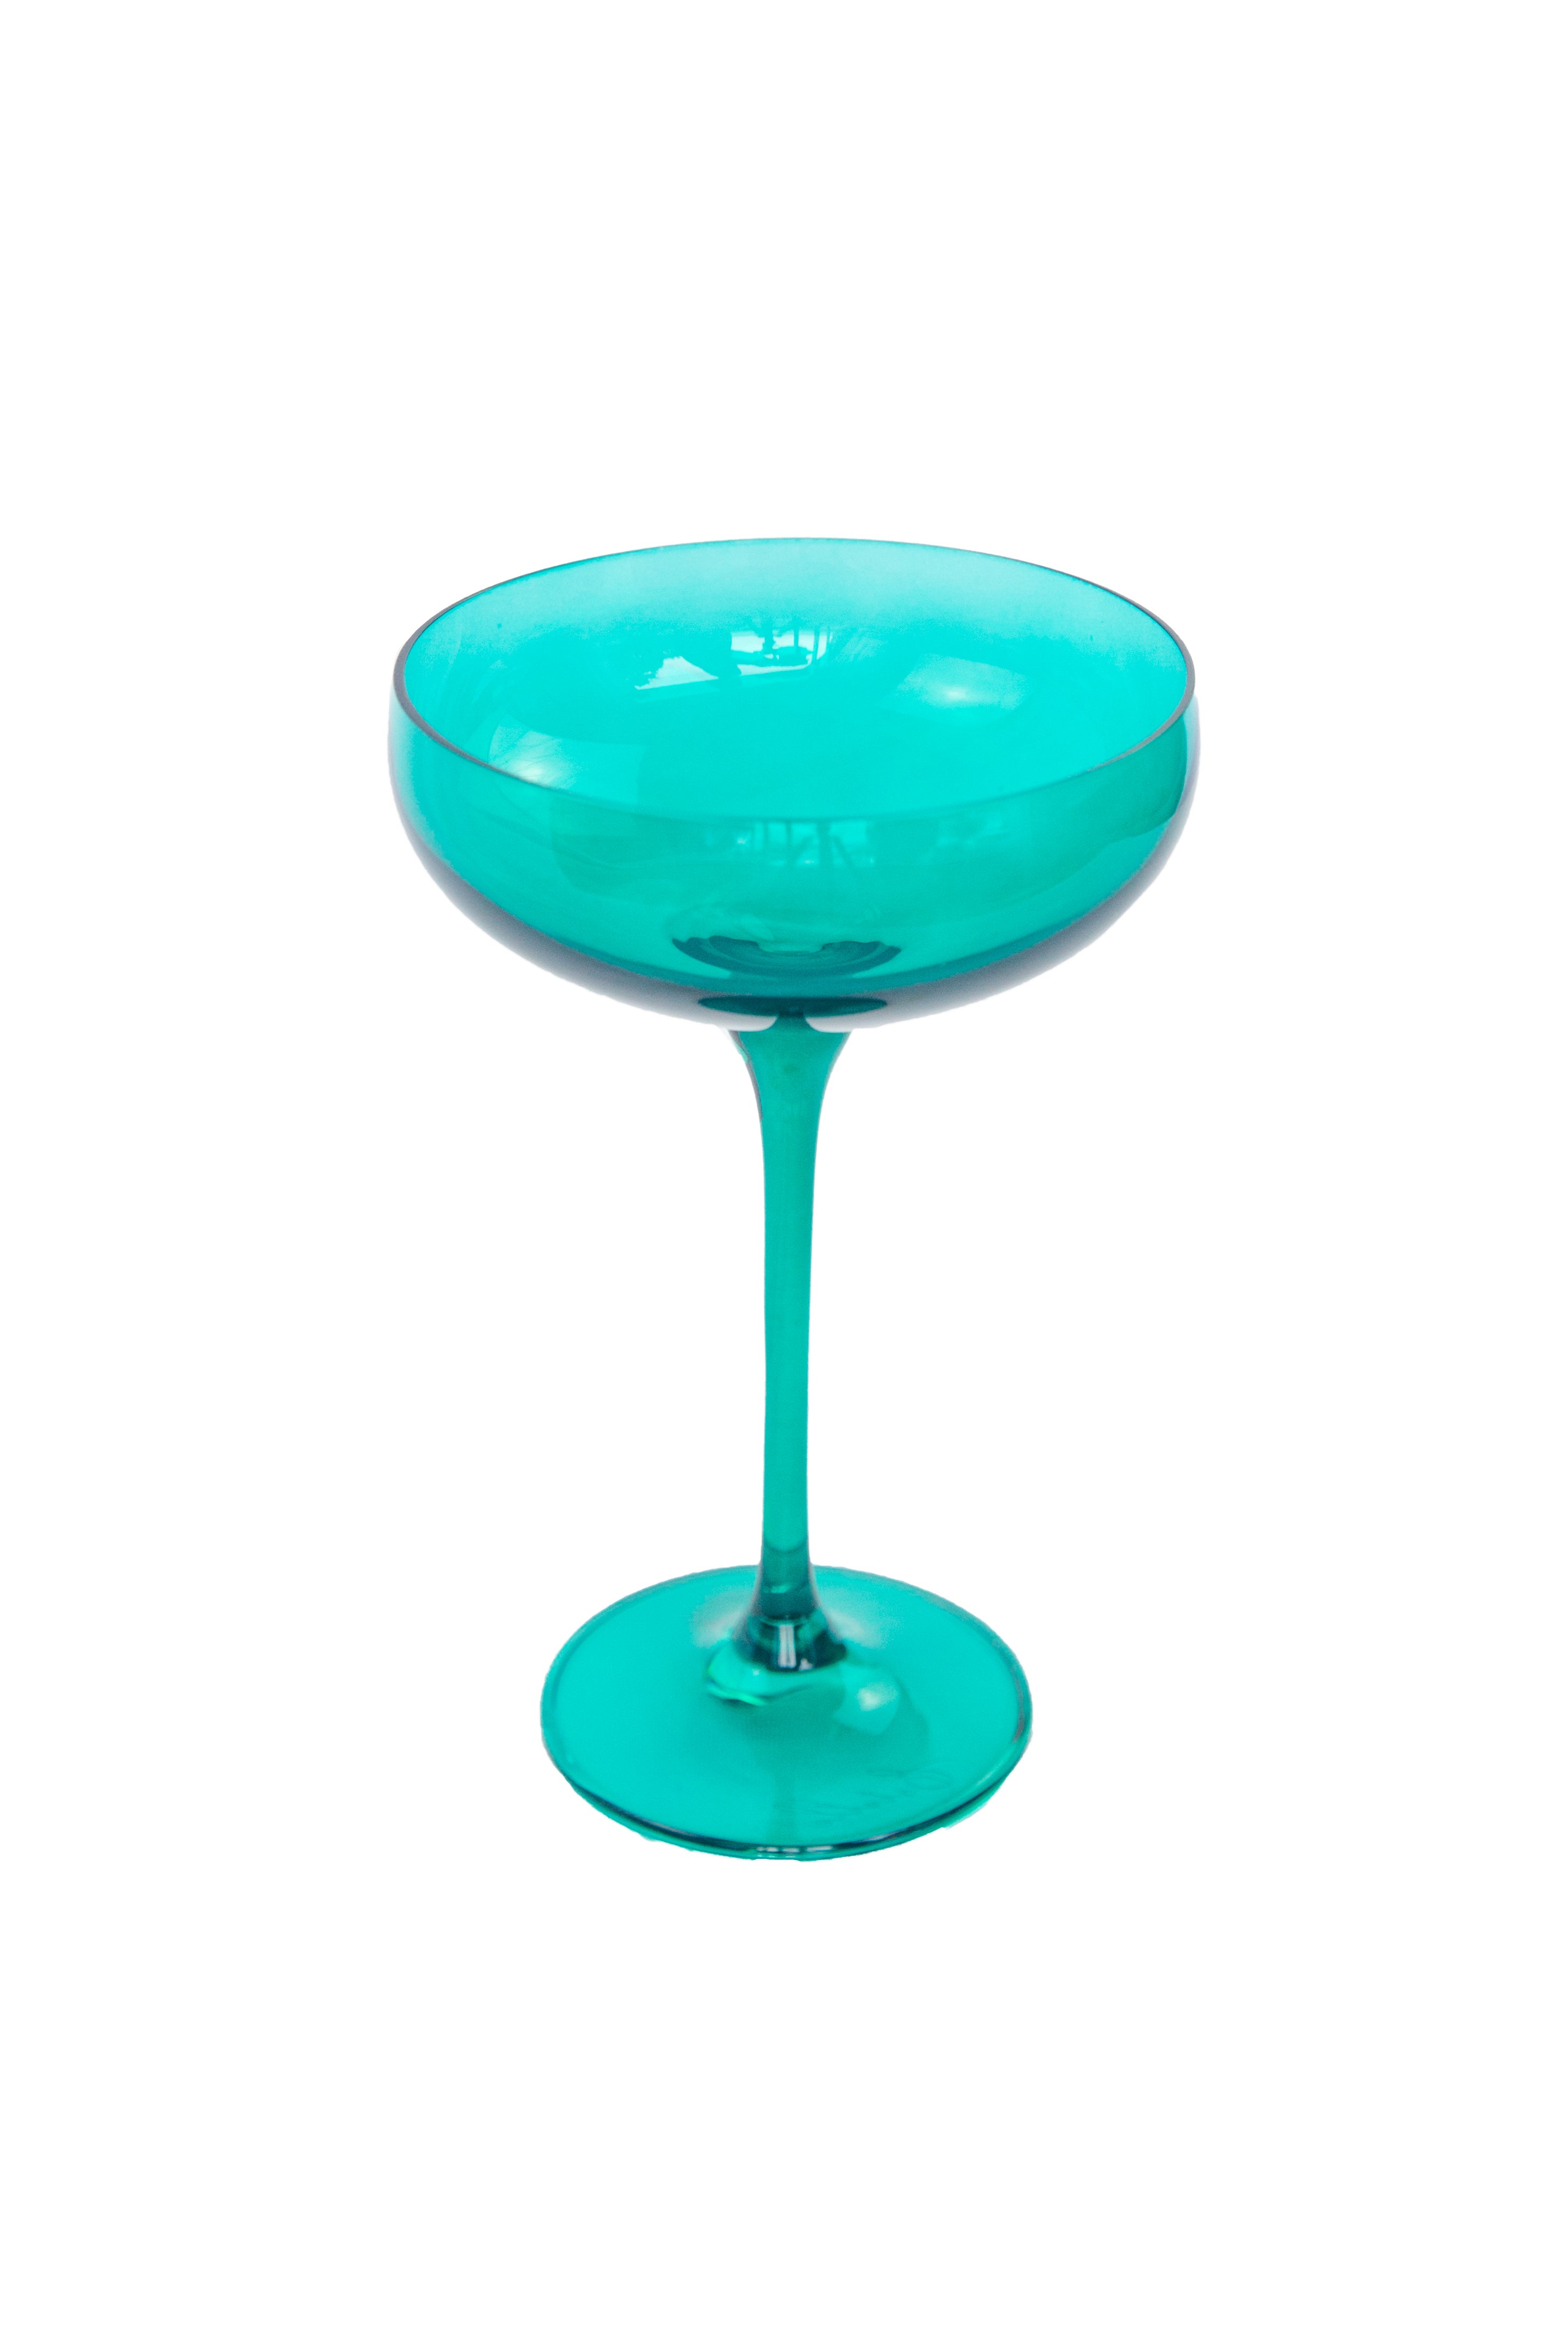 Estelle Colored Champagne Coupe Stemware - Set of 2 {Emerald Green}